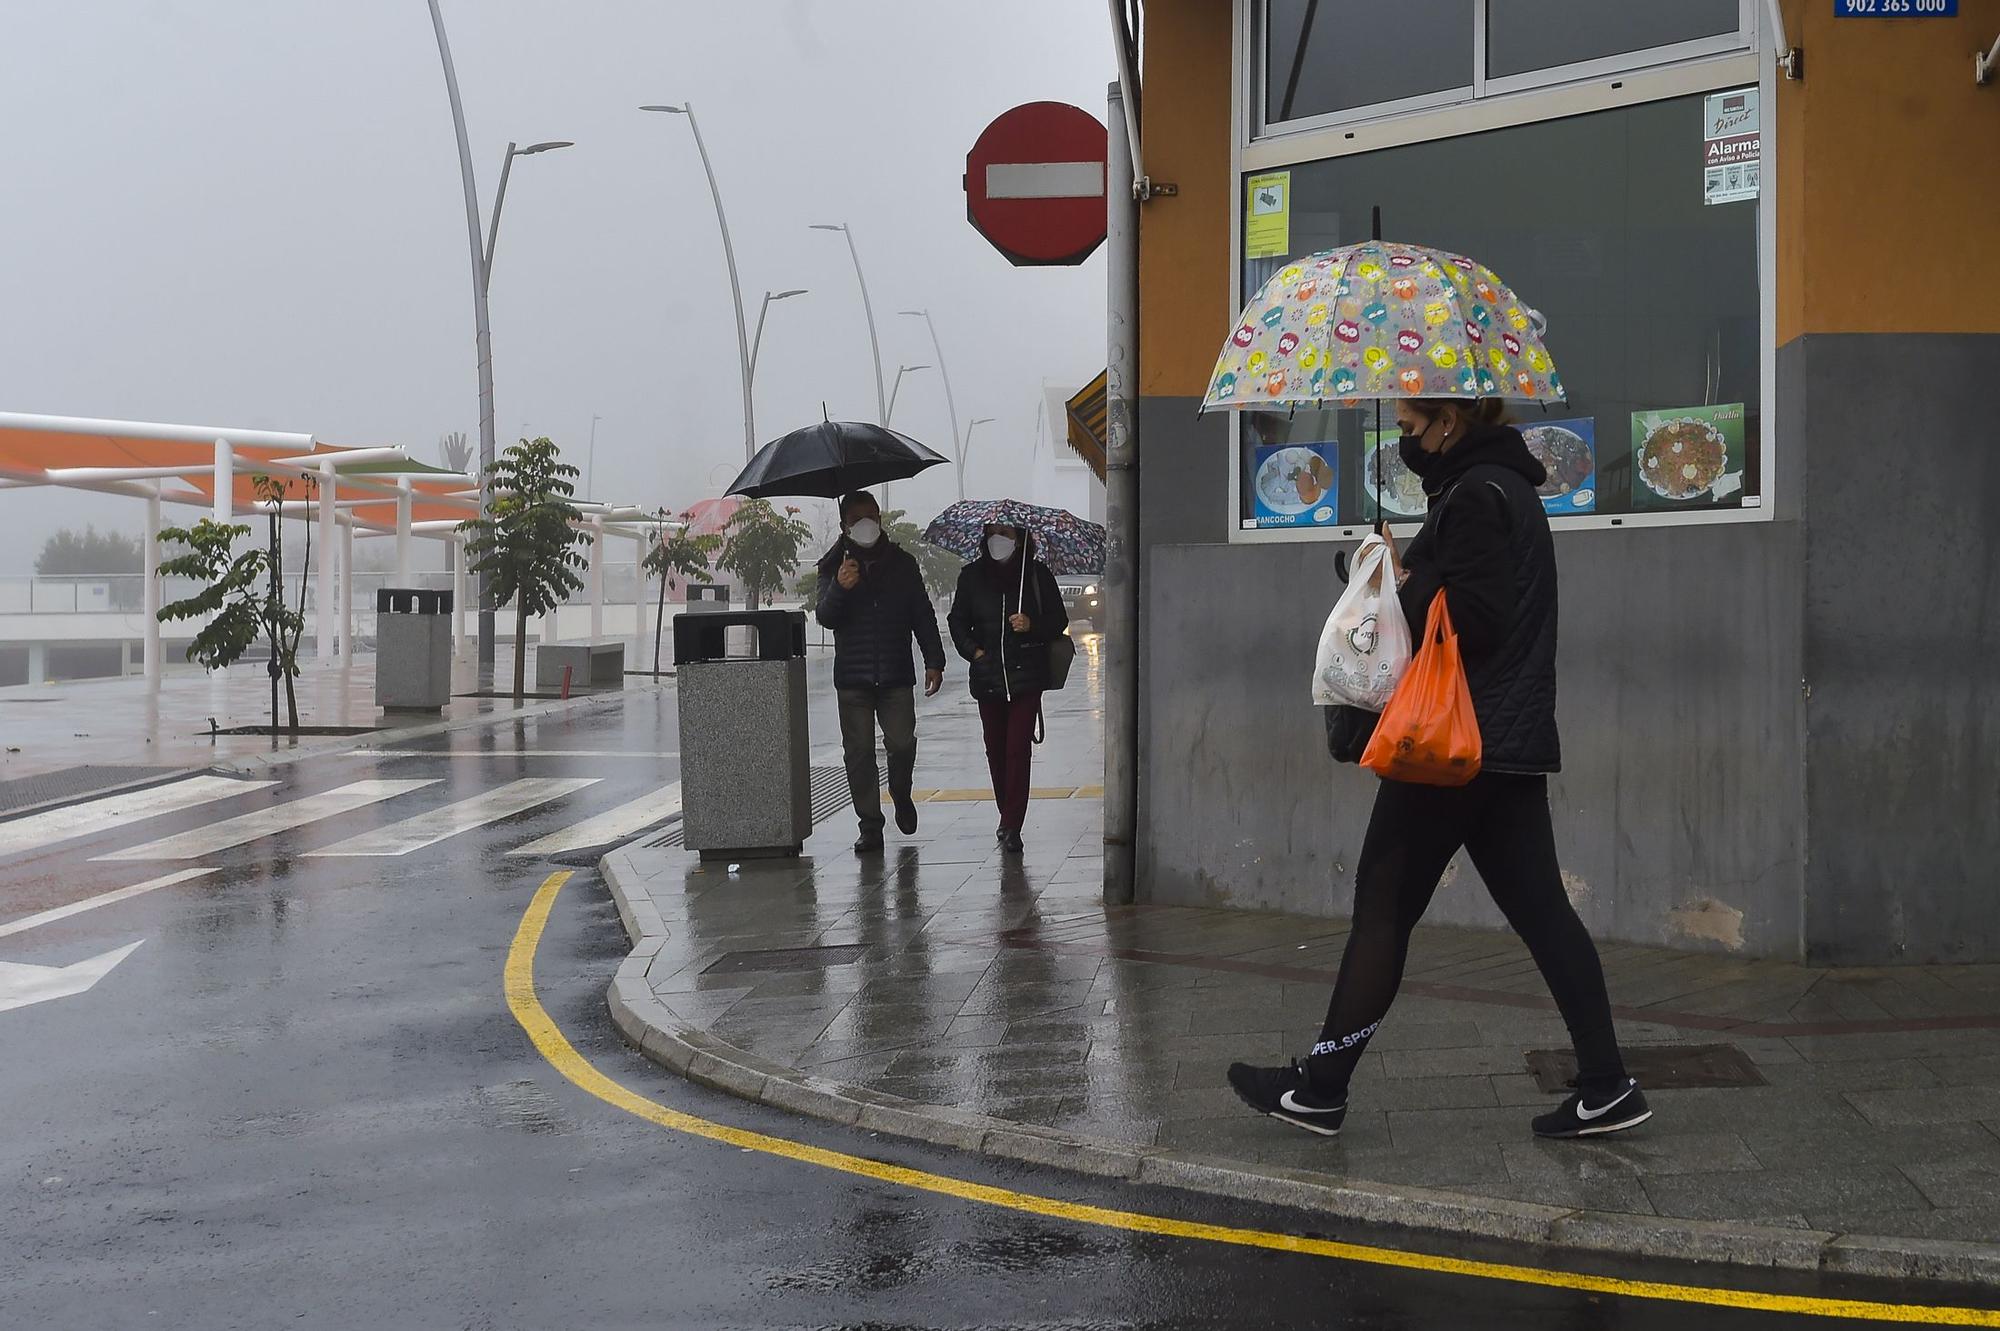 Lluvias débiles en el norte y medianías de Gran Canaria (07/01/2021)